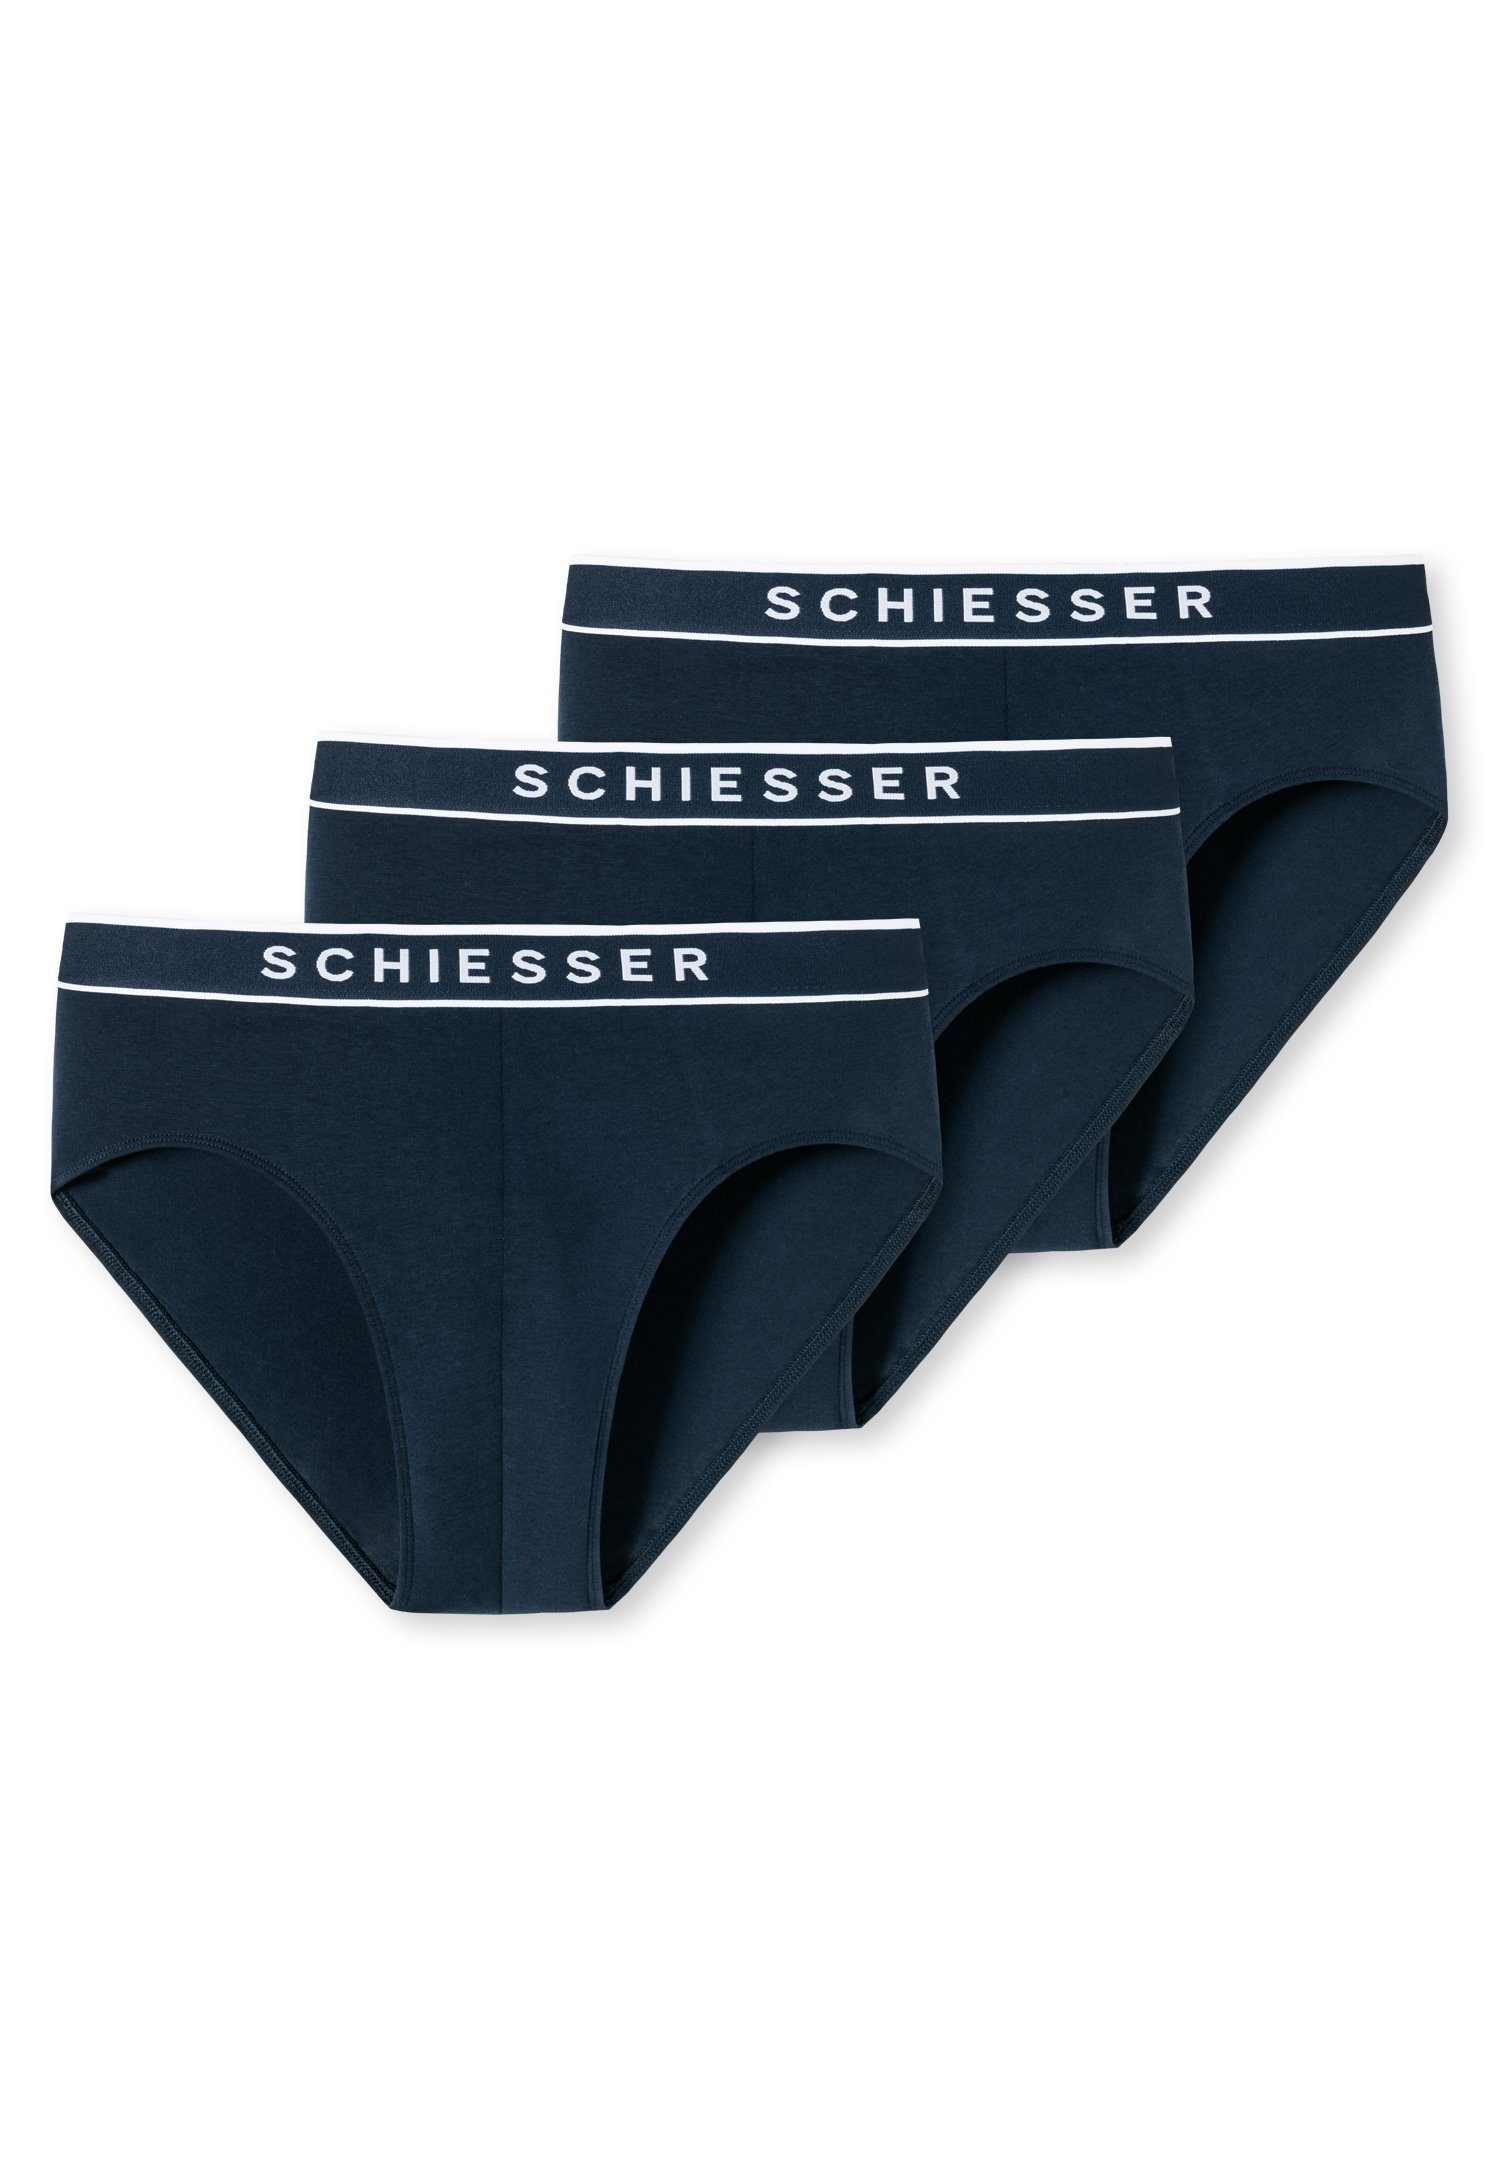 Schiesser-Logo mit (3er-Pack) Rioslip Schiesser kontraststarkem dunkelblau